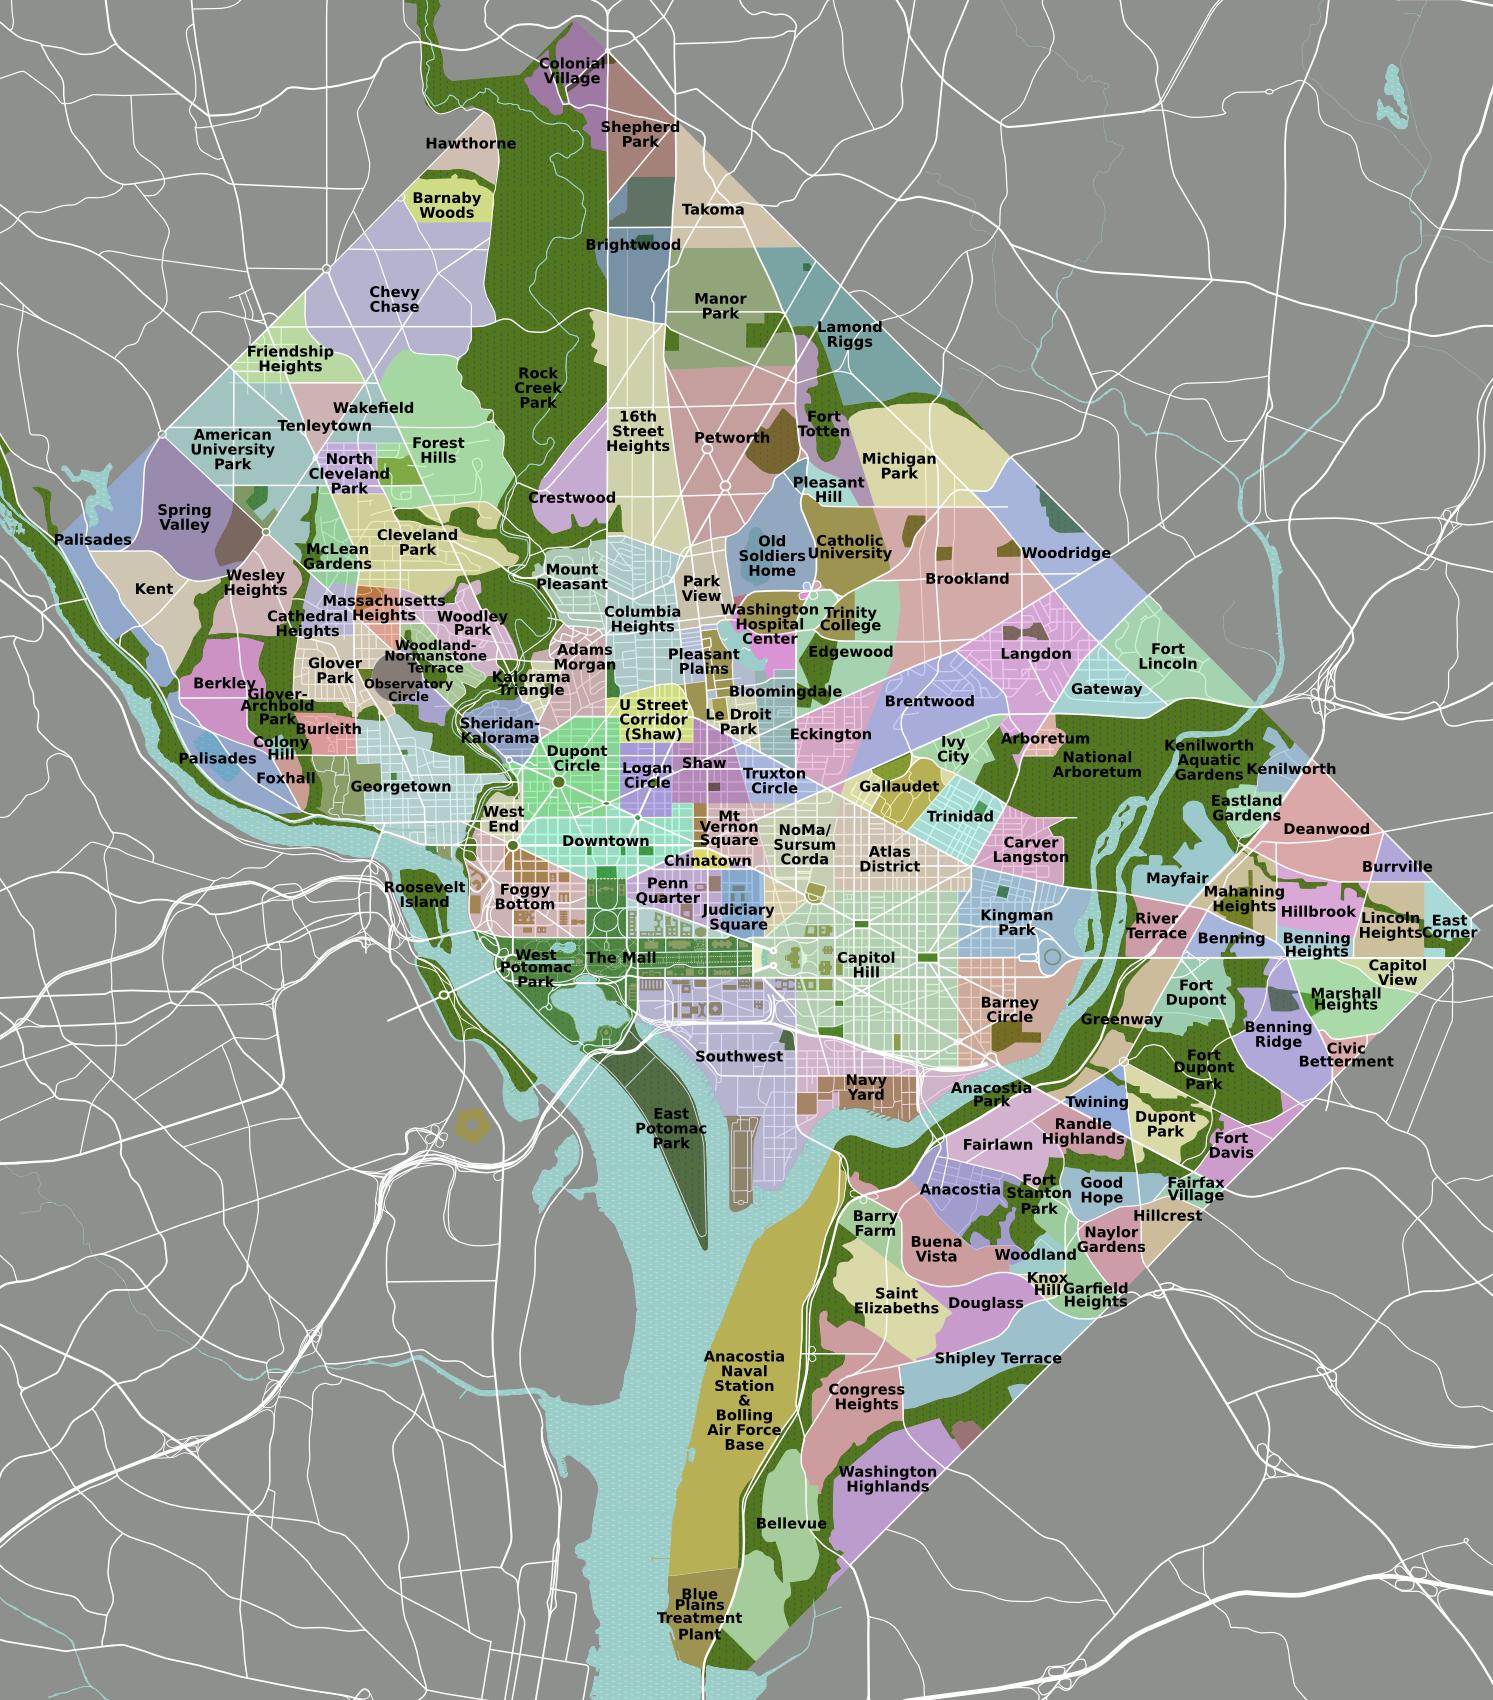 map-of-washington-dc-neighborhood-surrounding-area-and-suburbs-of